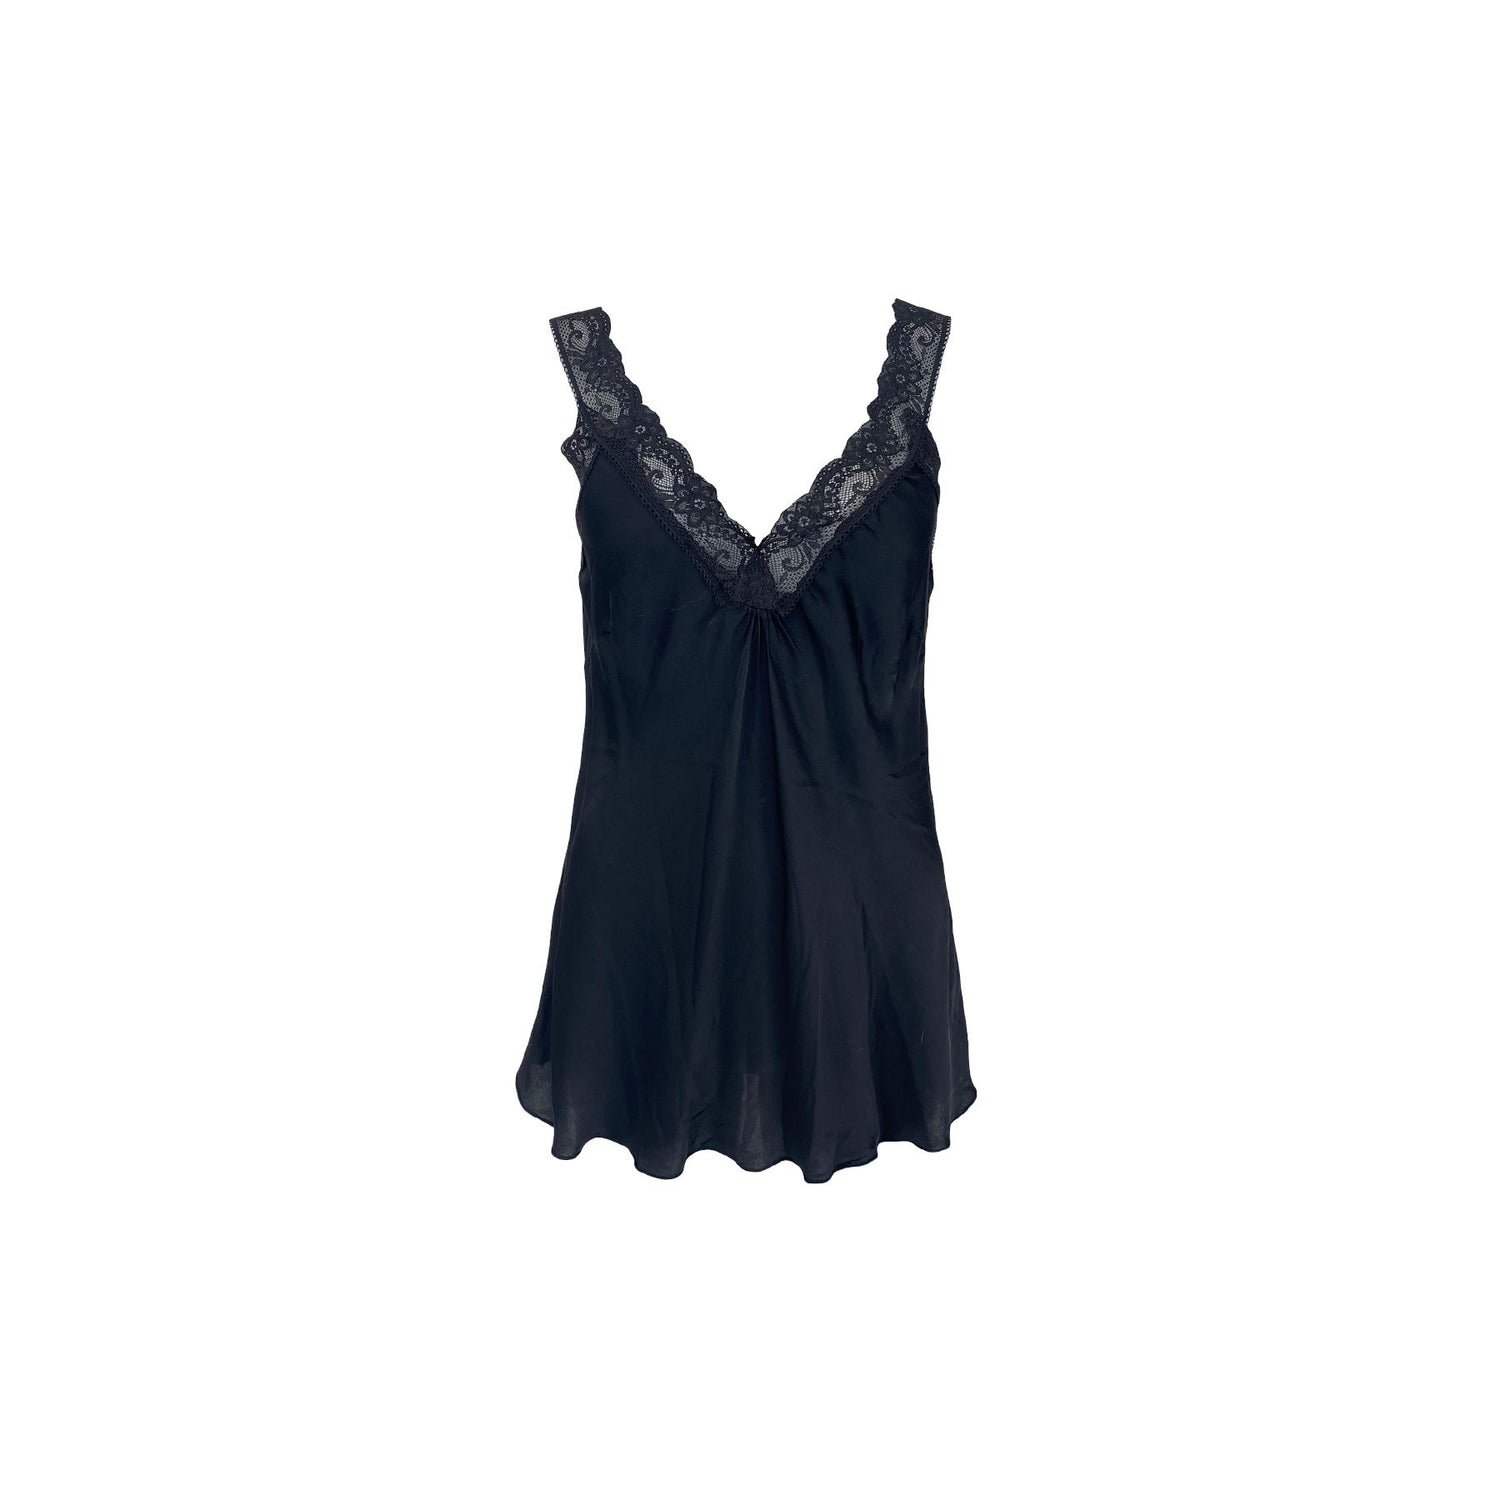 Bea Lace Top | Black Shirts & Tops Black Colour 